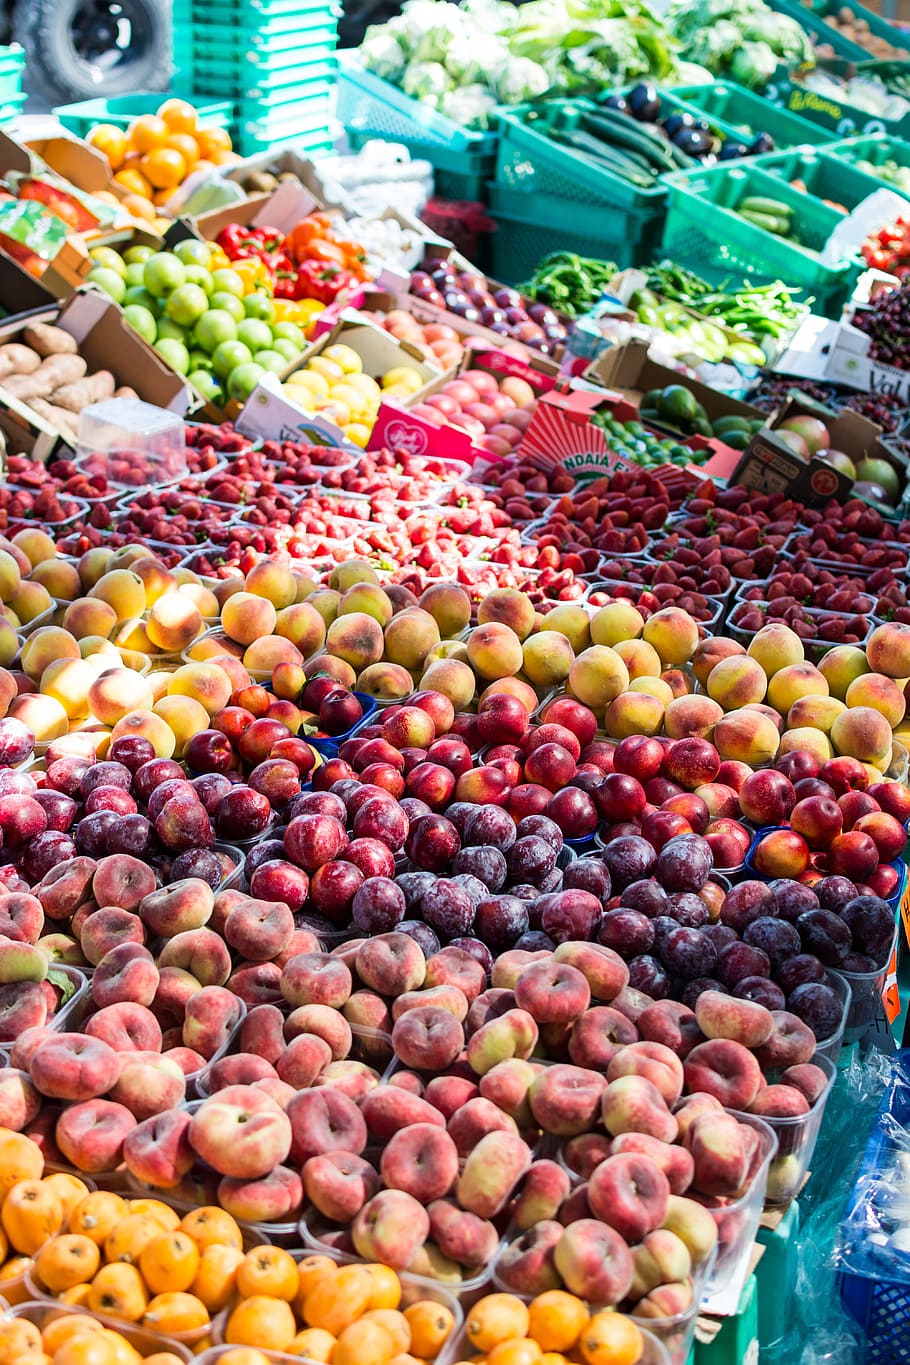 pasar buah musim panas, buah musim panas, pasar buah, buah, pasar, musim panas, makanan, kios pasar, kesegaran, sayur